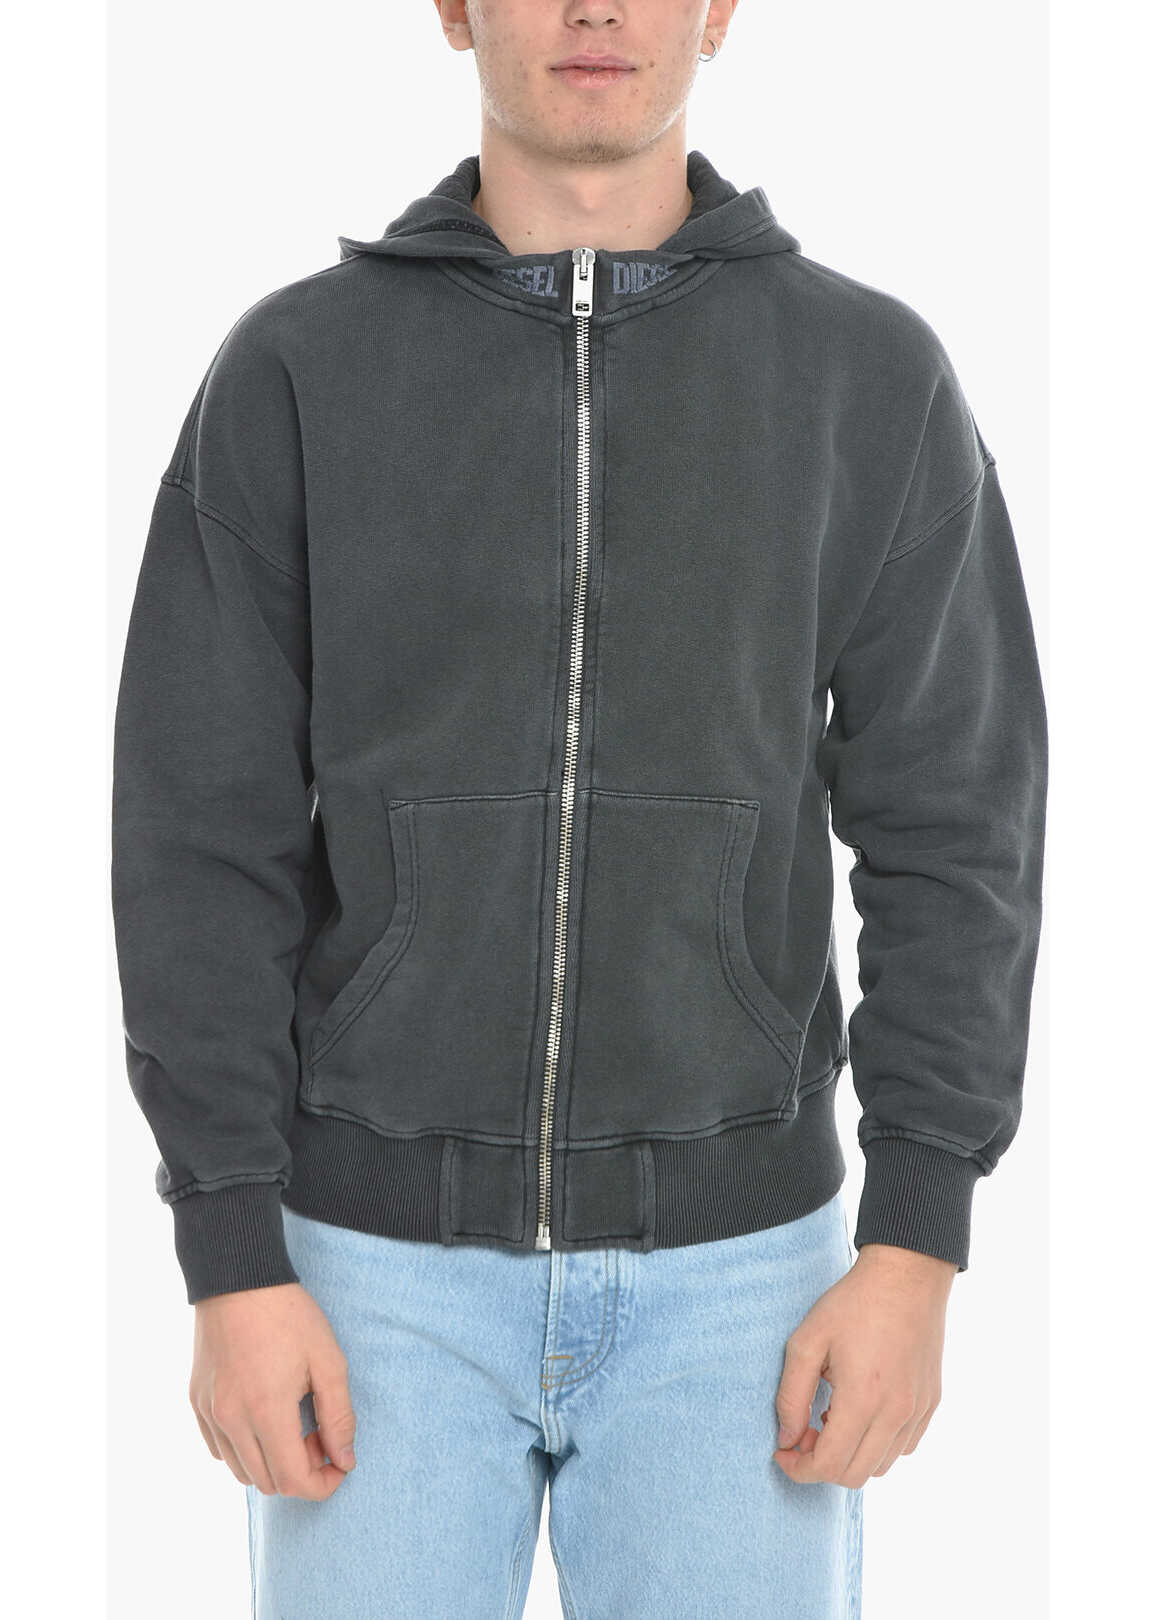 Diesel Brushed Cotton S-Nekki-Jac Sweatshirt With Hood And Zip Clos Gray